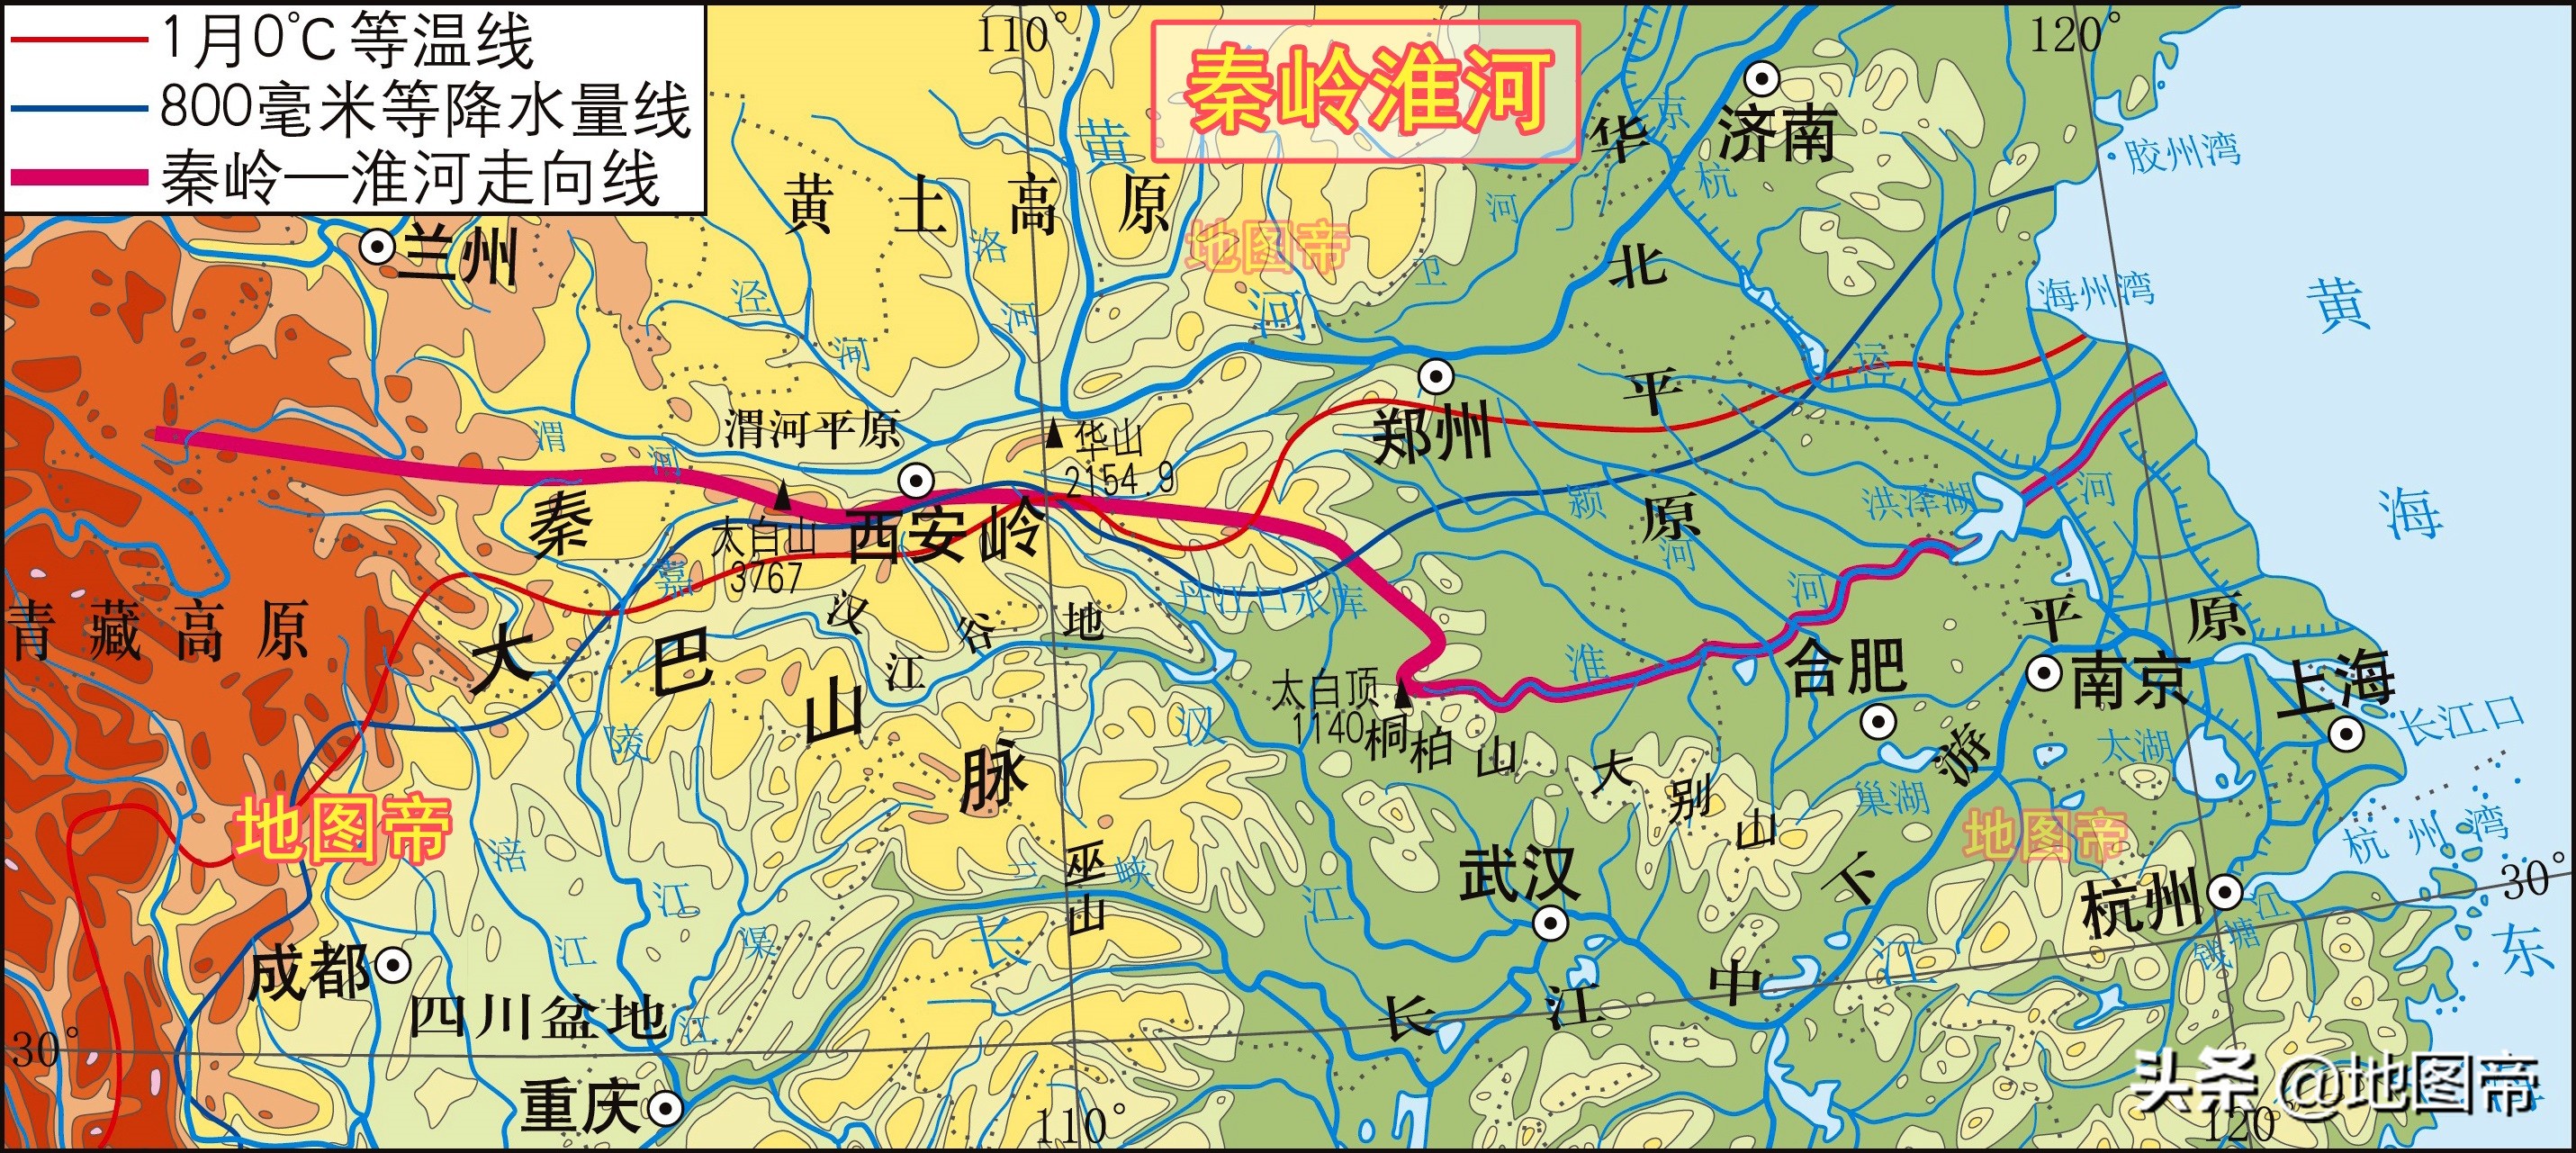 秦岭淮河一线,是中国南北分界线,是一月份零度等温线,是800毫米年降水